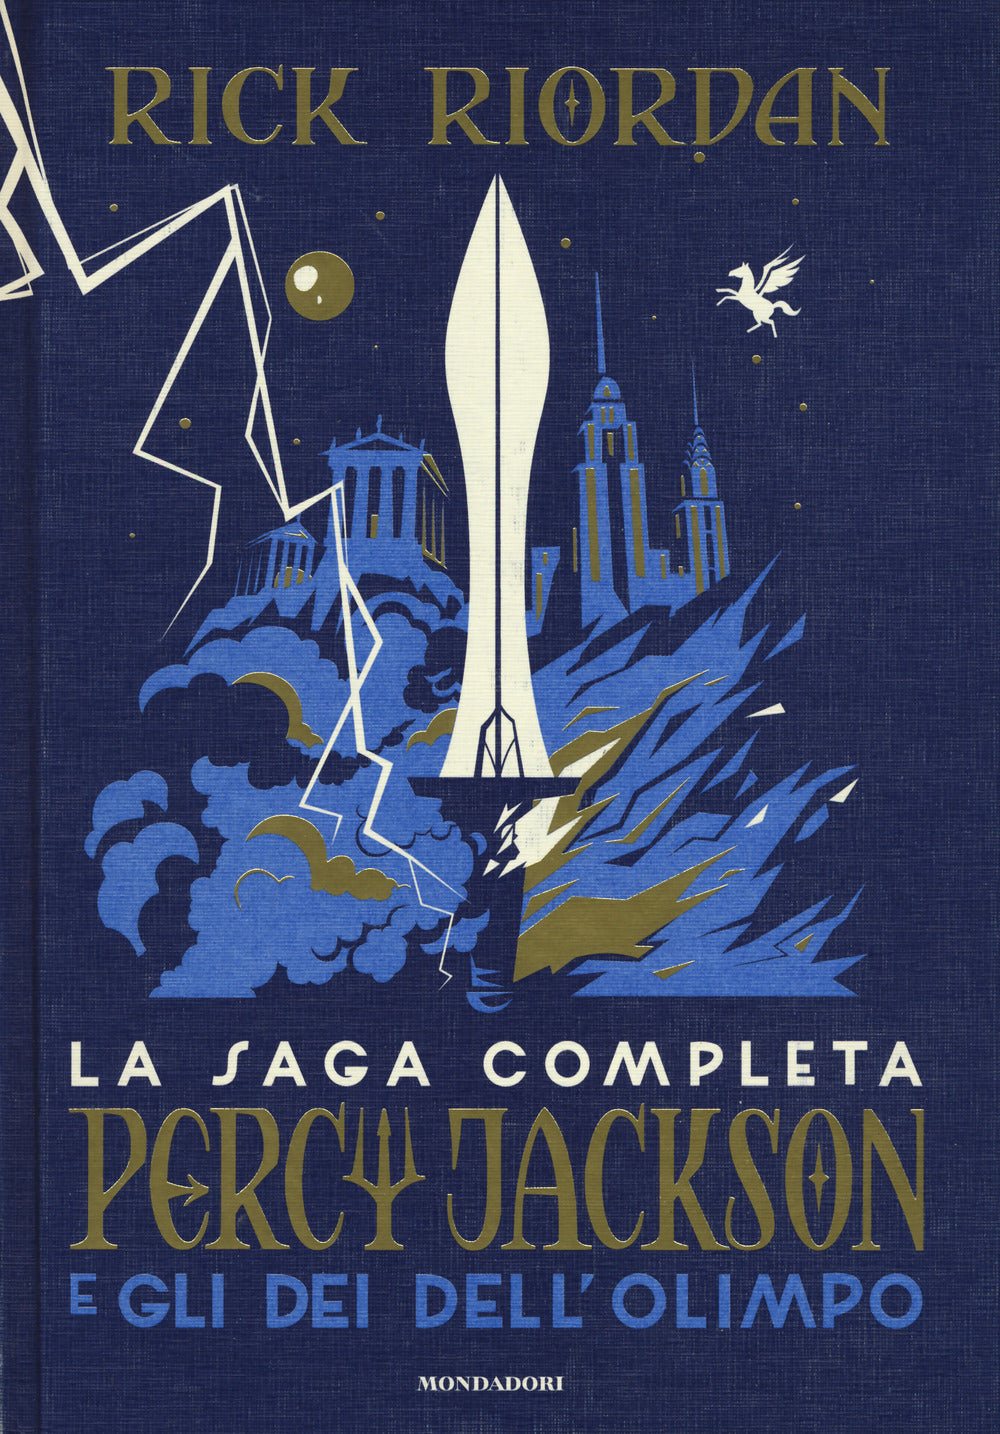 Percy Jackson e gli dei dell'Olimpo. La saga completa.